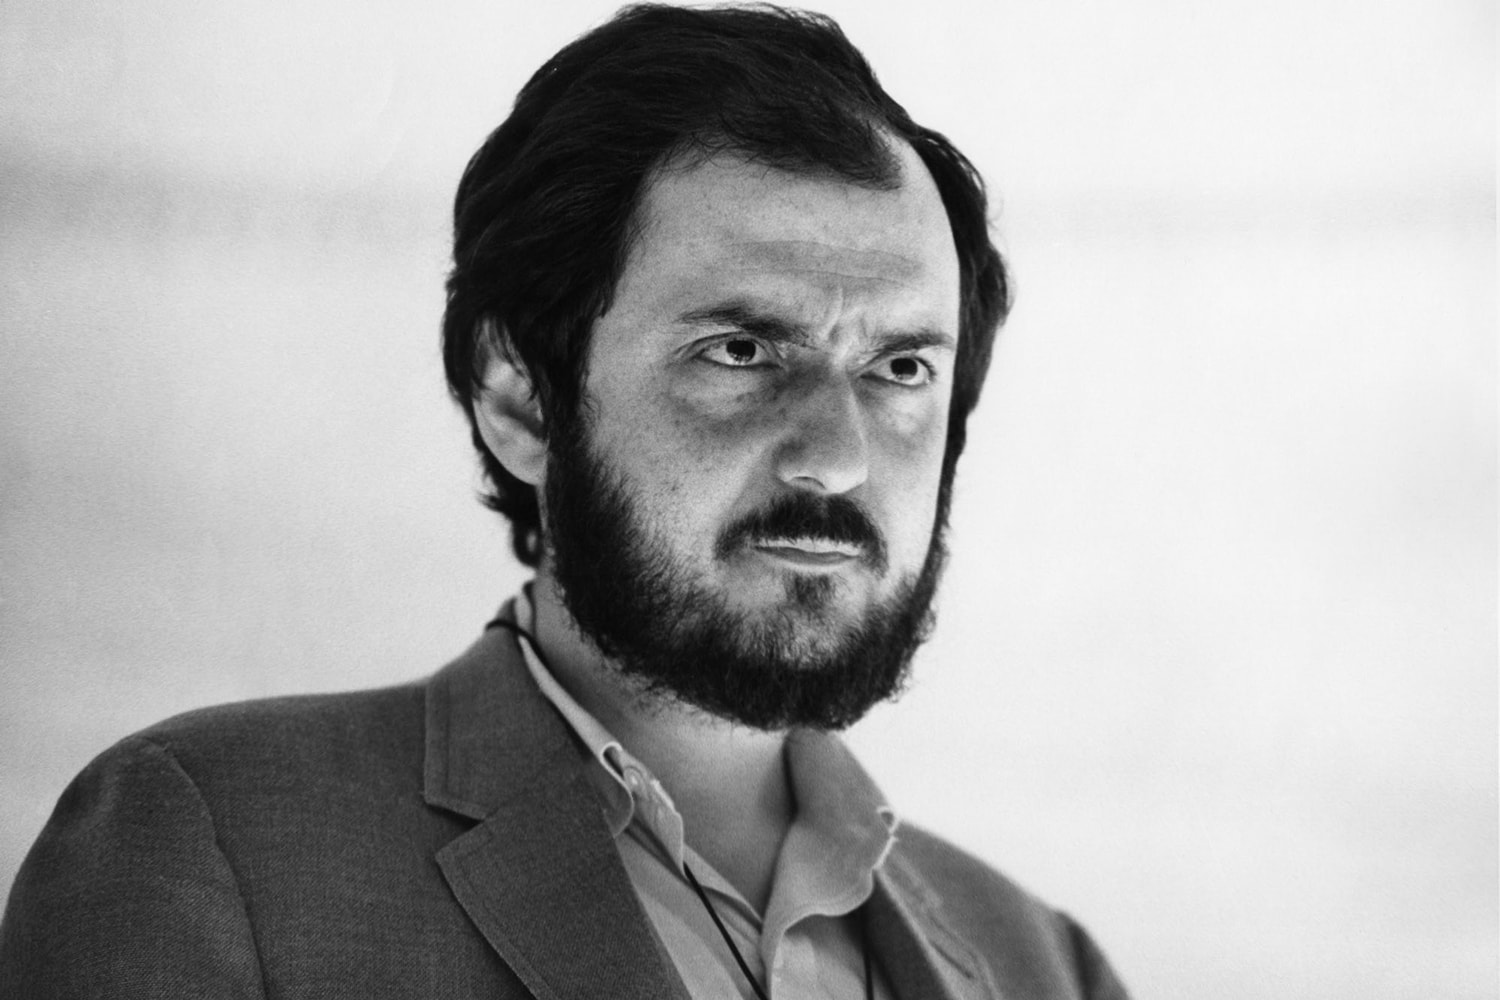 傳奇導演 Stanley Kubrick 個人紀錄片《Kubrick By Kubrick》宣傳預告正式發佈